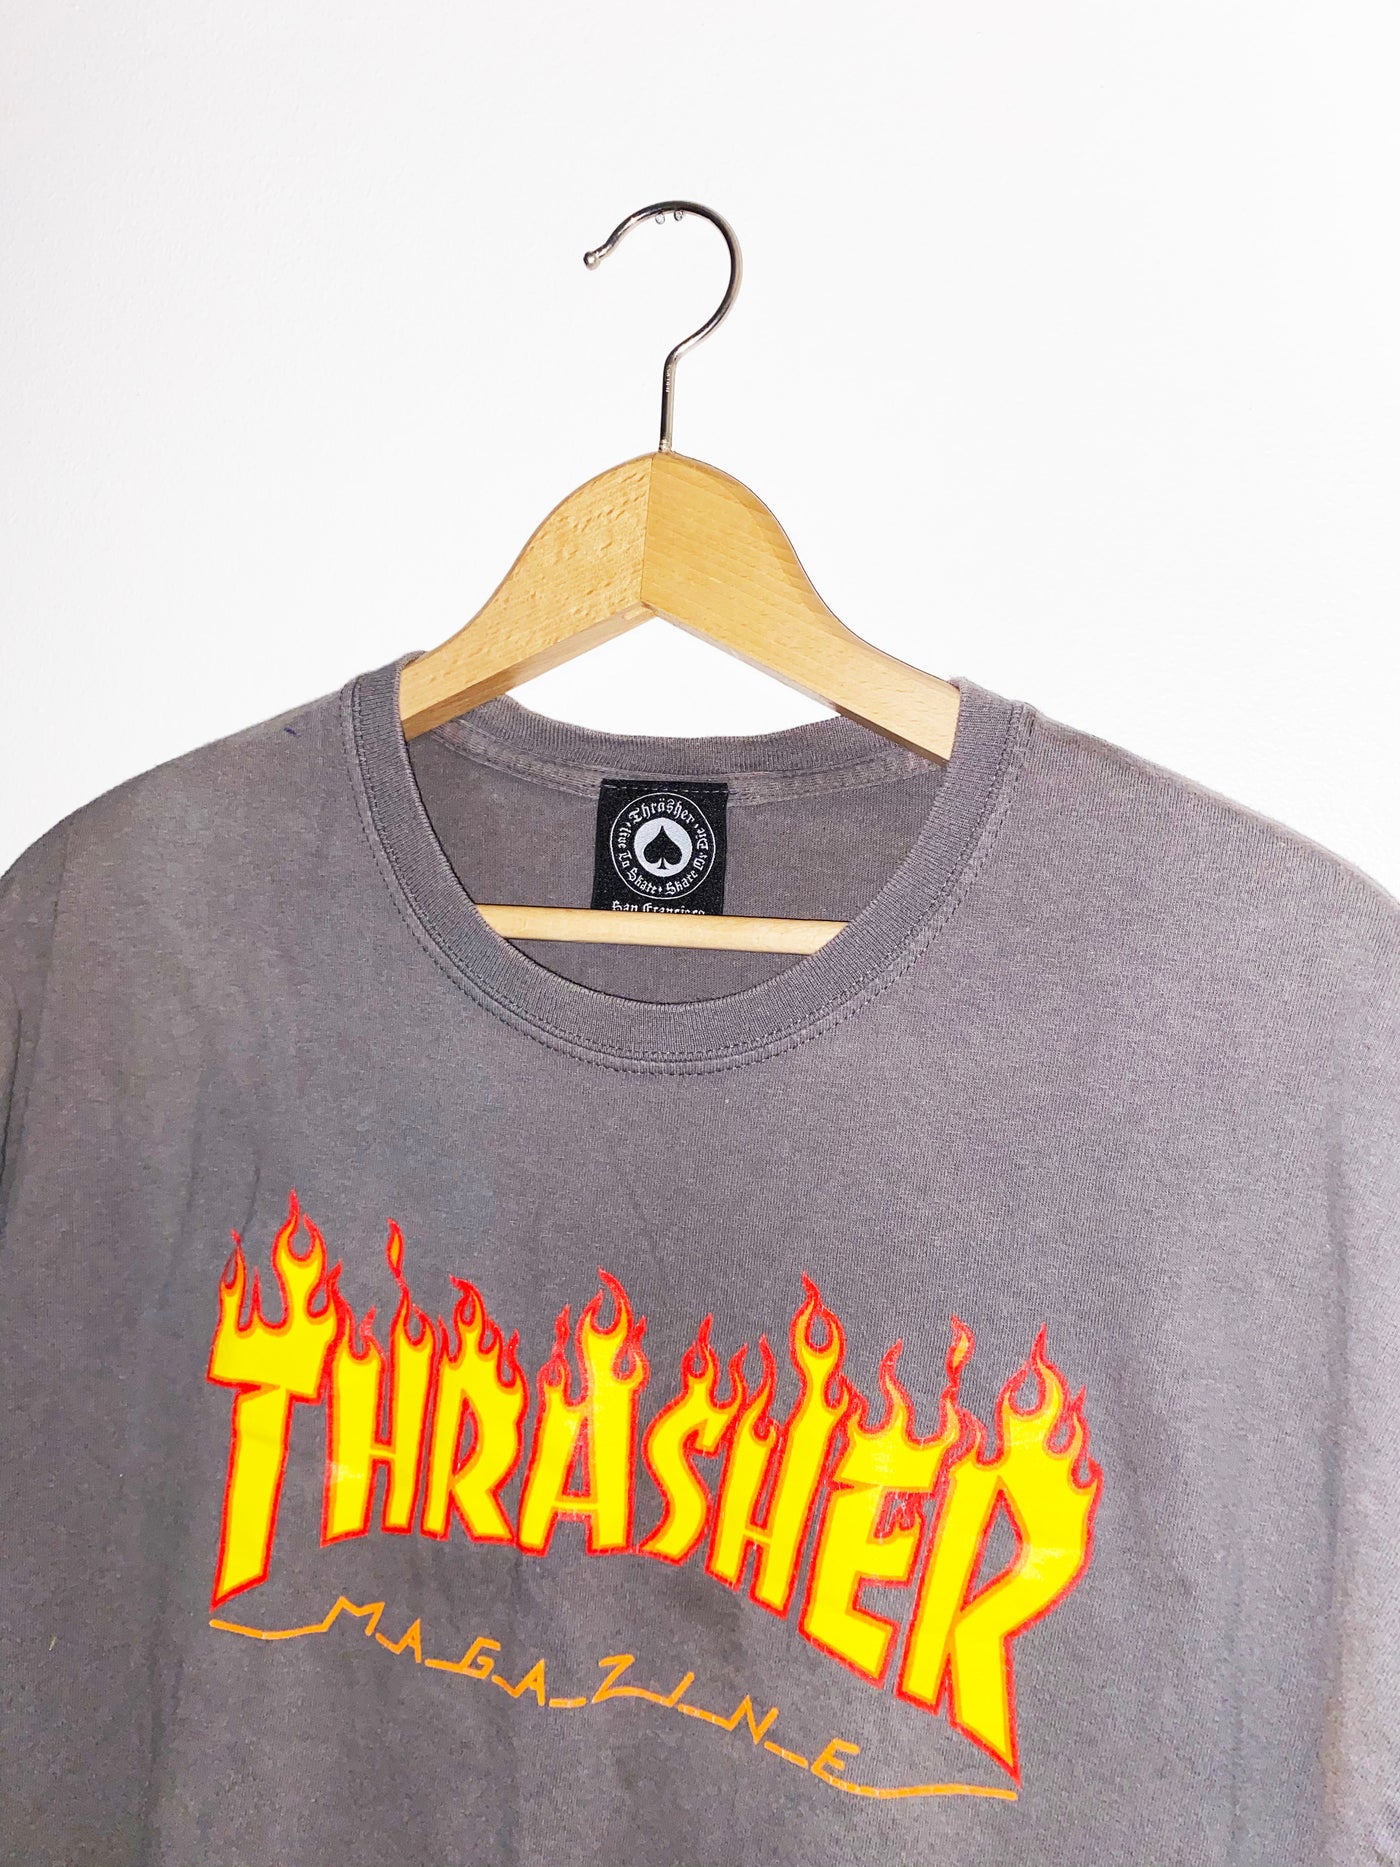 Y2K Thrasher Magazine T-Shirt